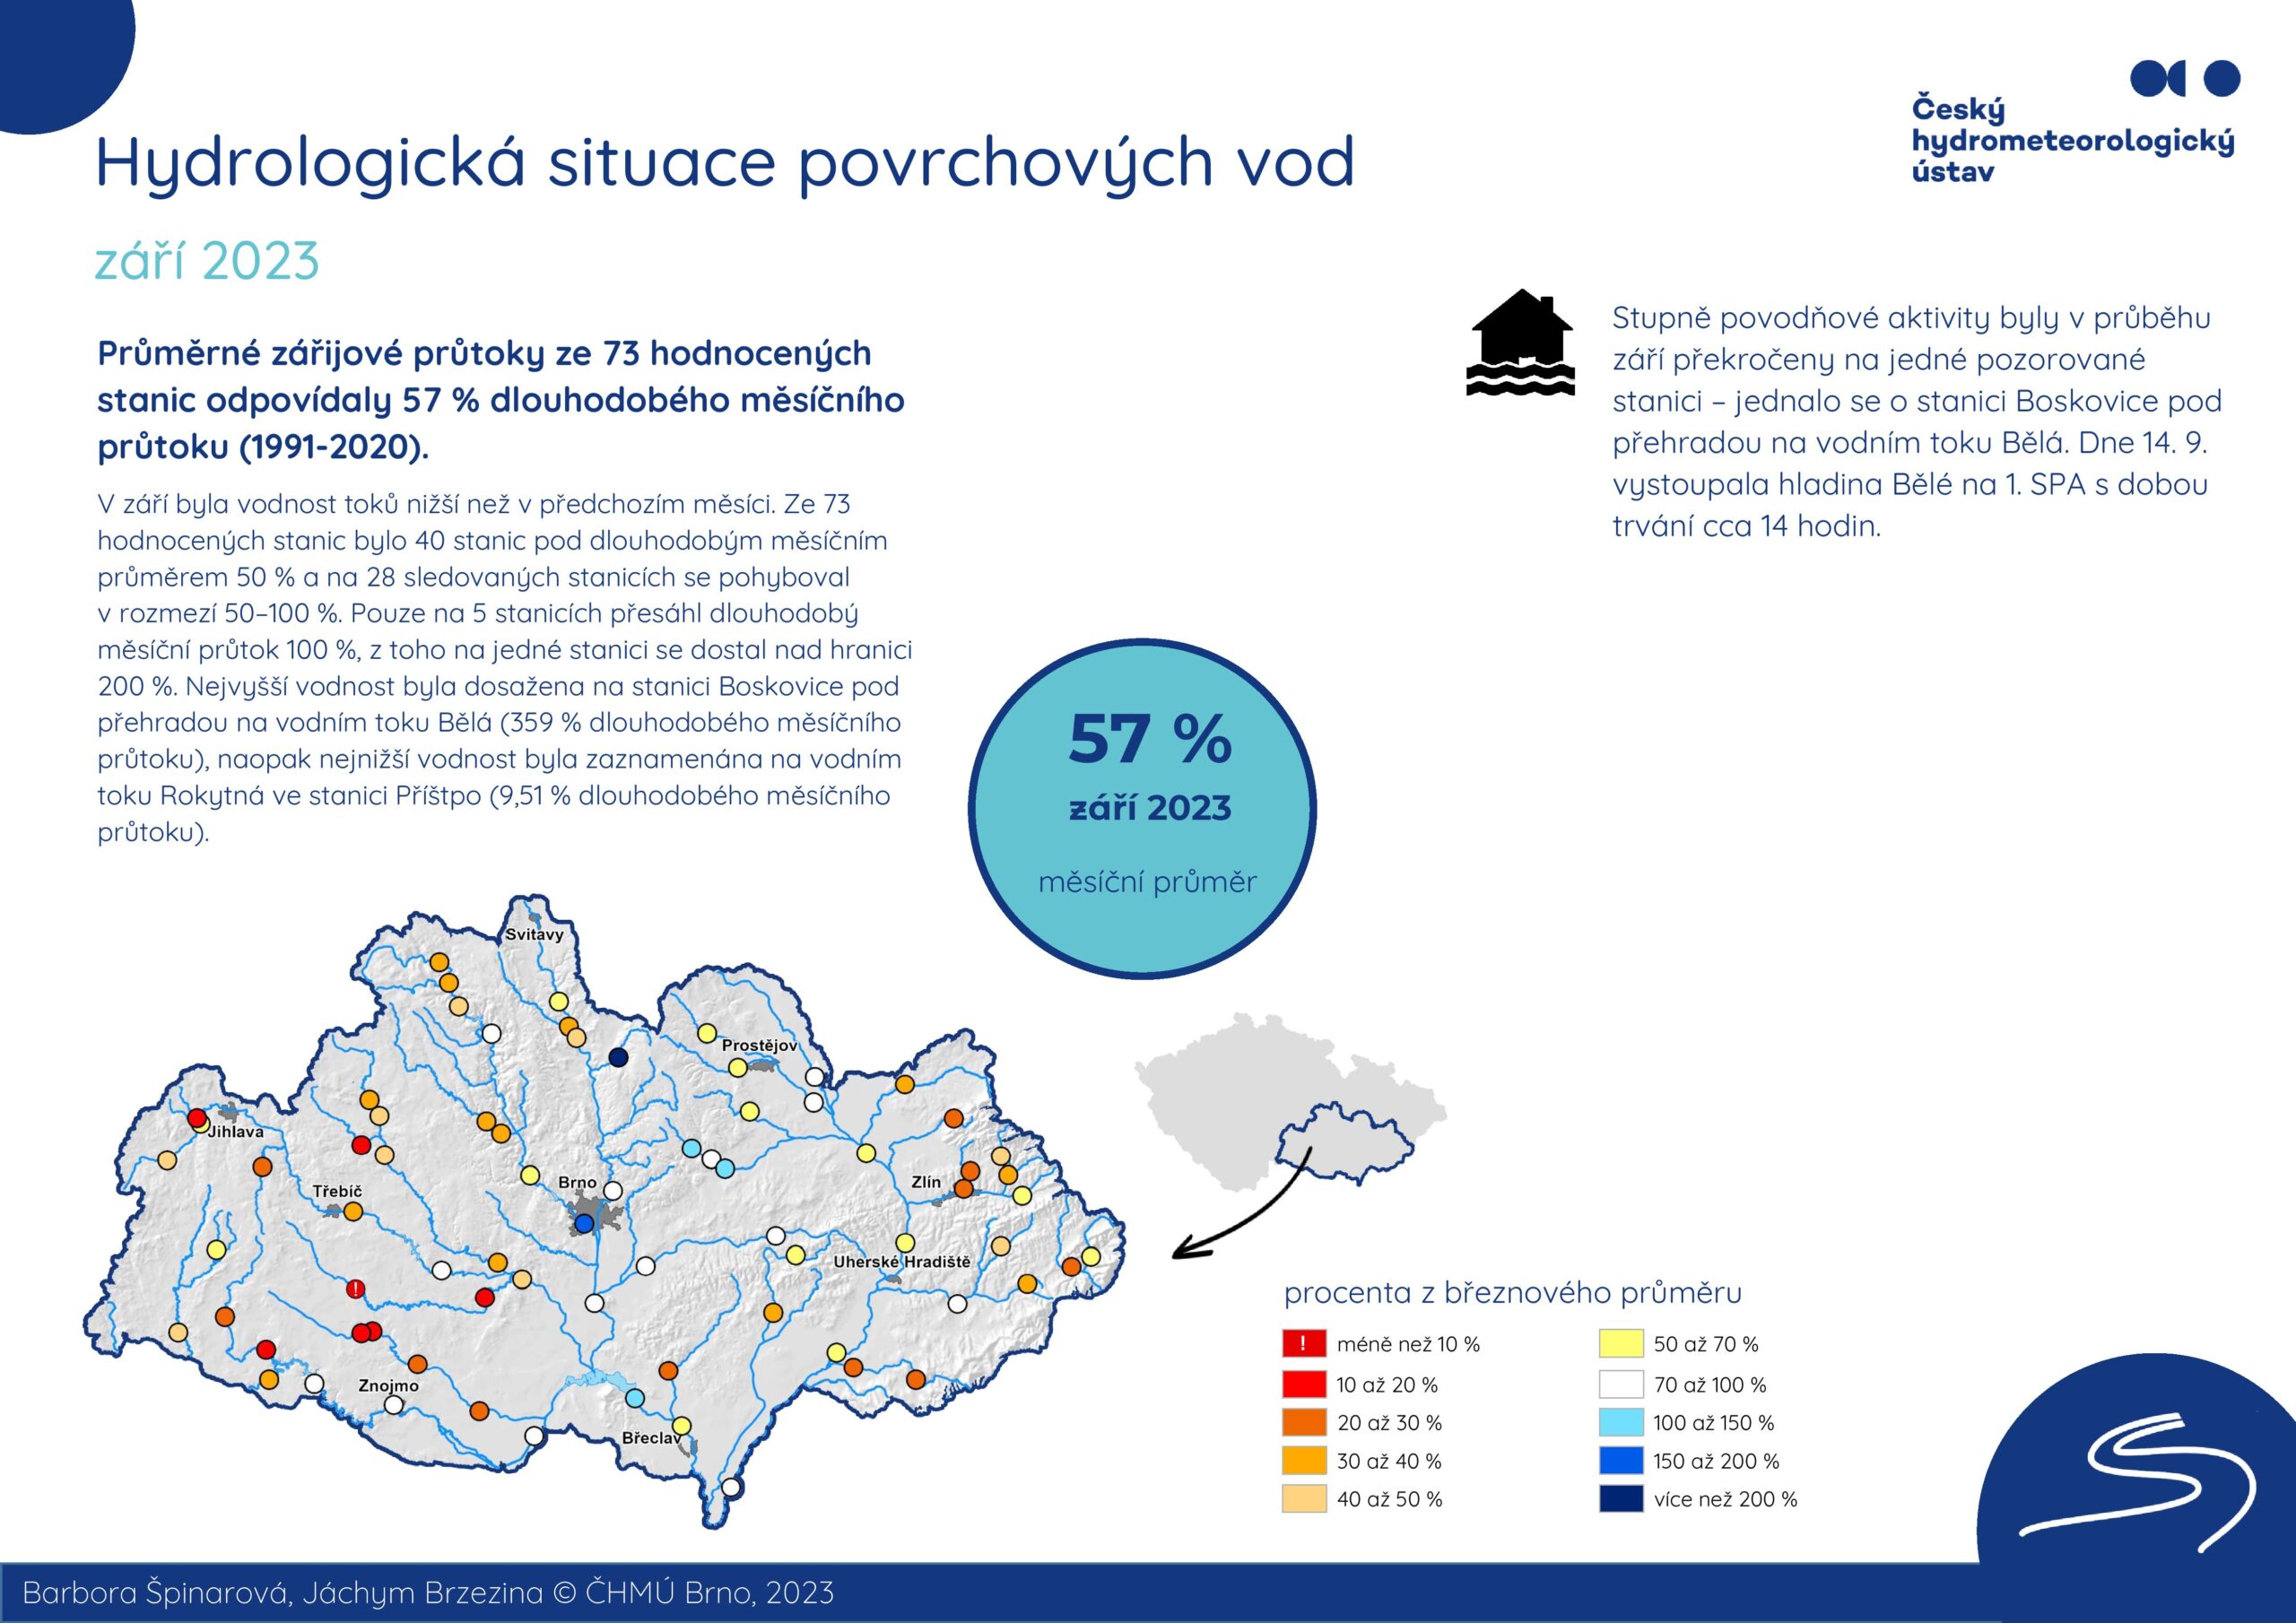 Hydrologická situace povrchových vod na pobočce Brno – září 20231 min čtení